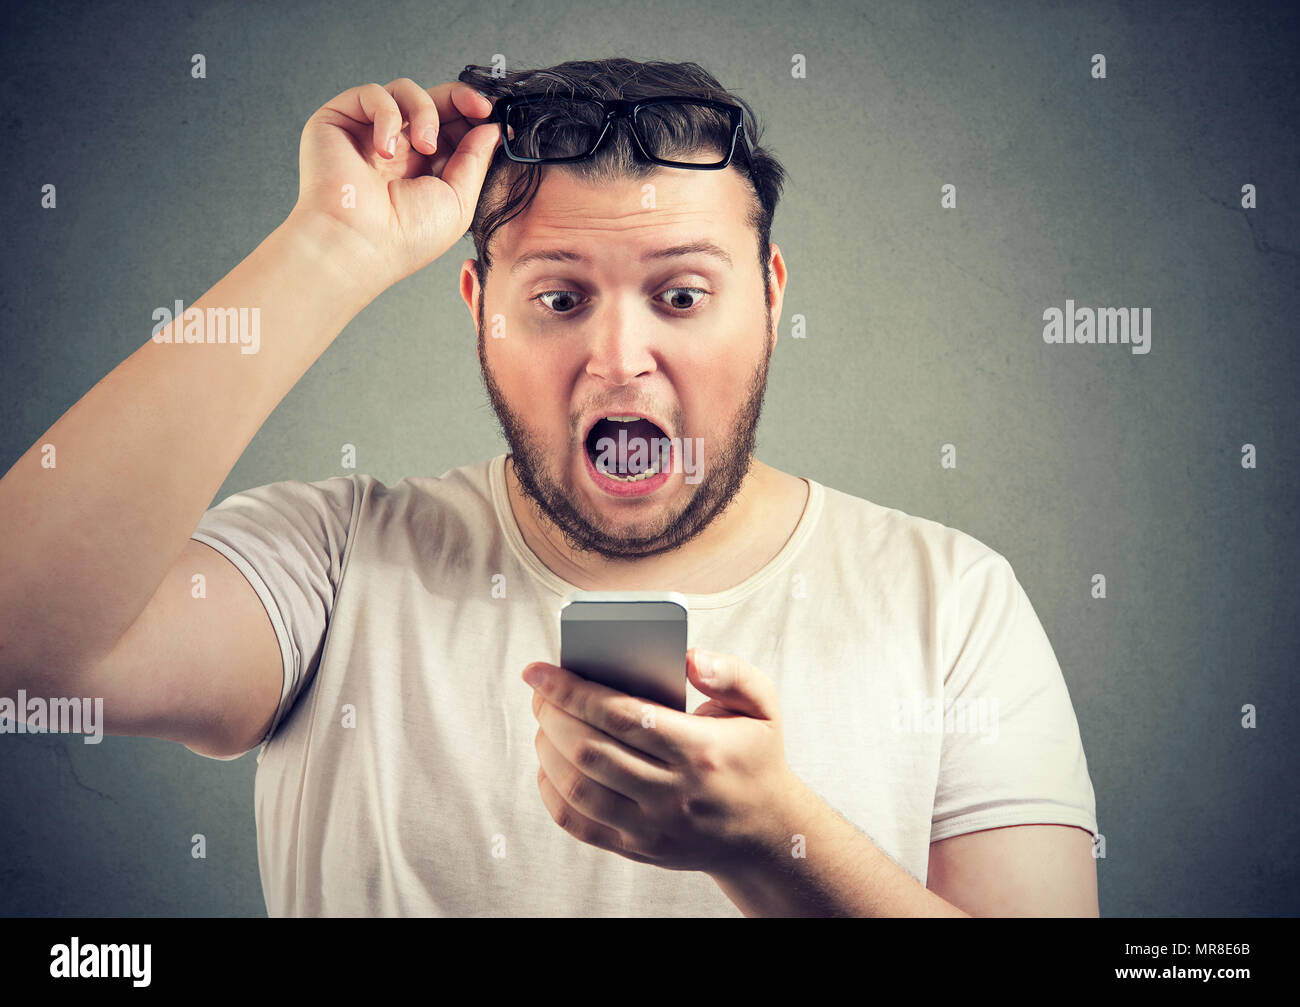 Jeune homme Super étonné à l'excès de lecture nouvelle choquante sur smartphone holding glasses up avec la bouche ouverte. Banque D'Images